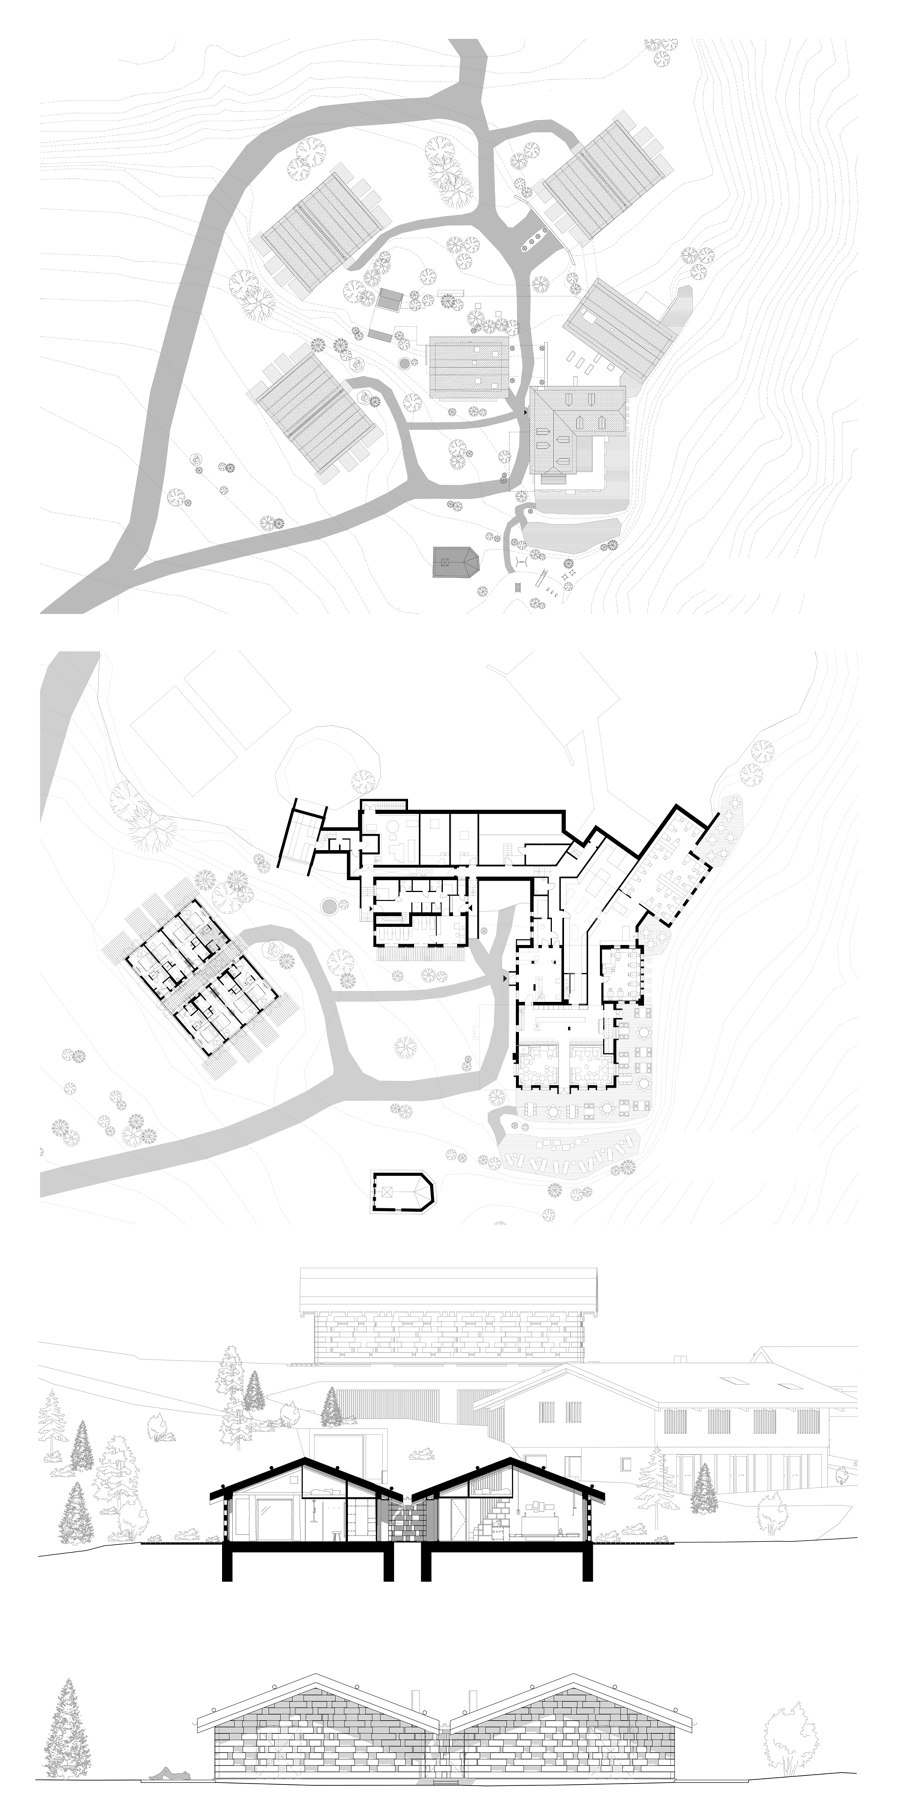 Zallinger von noa* network of architecture | Hotels